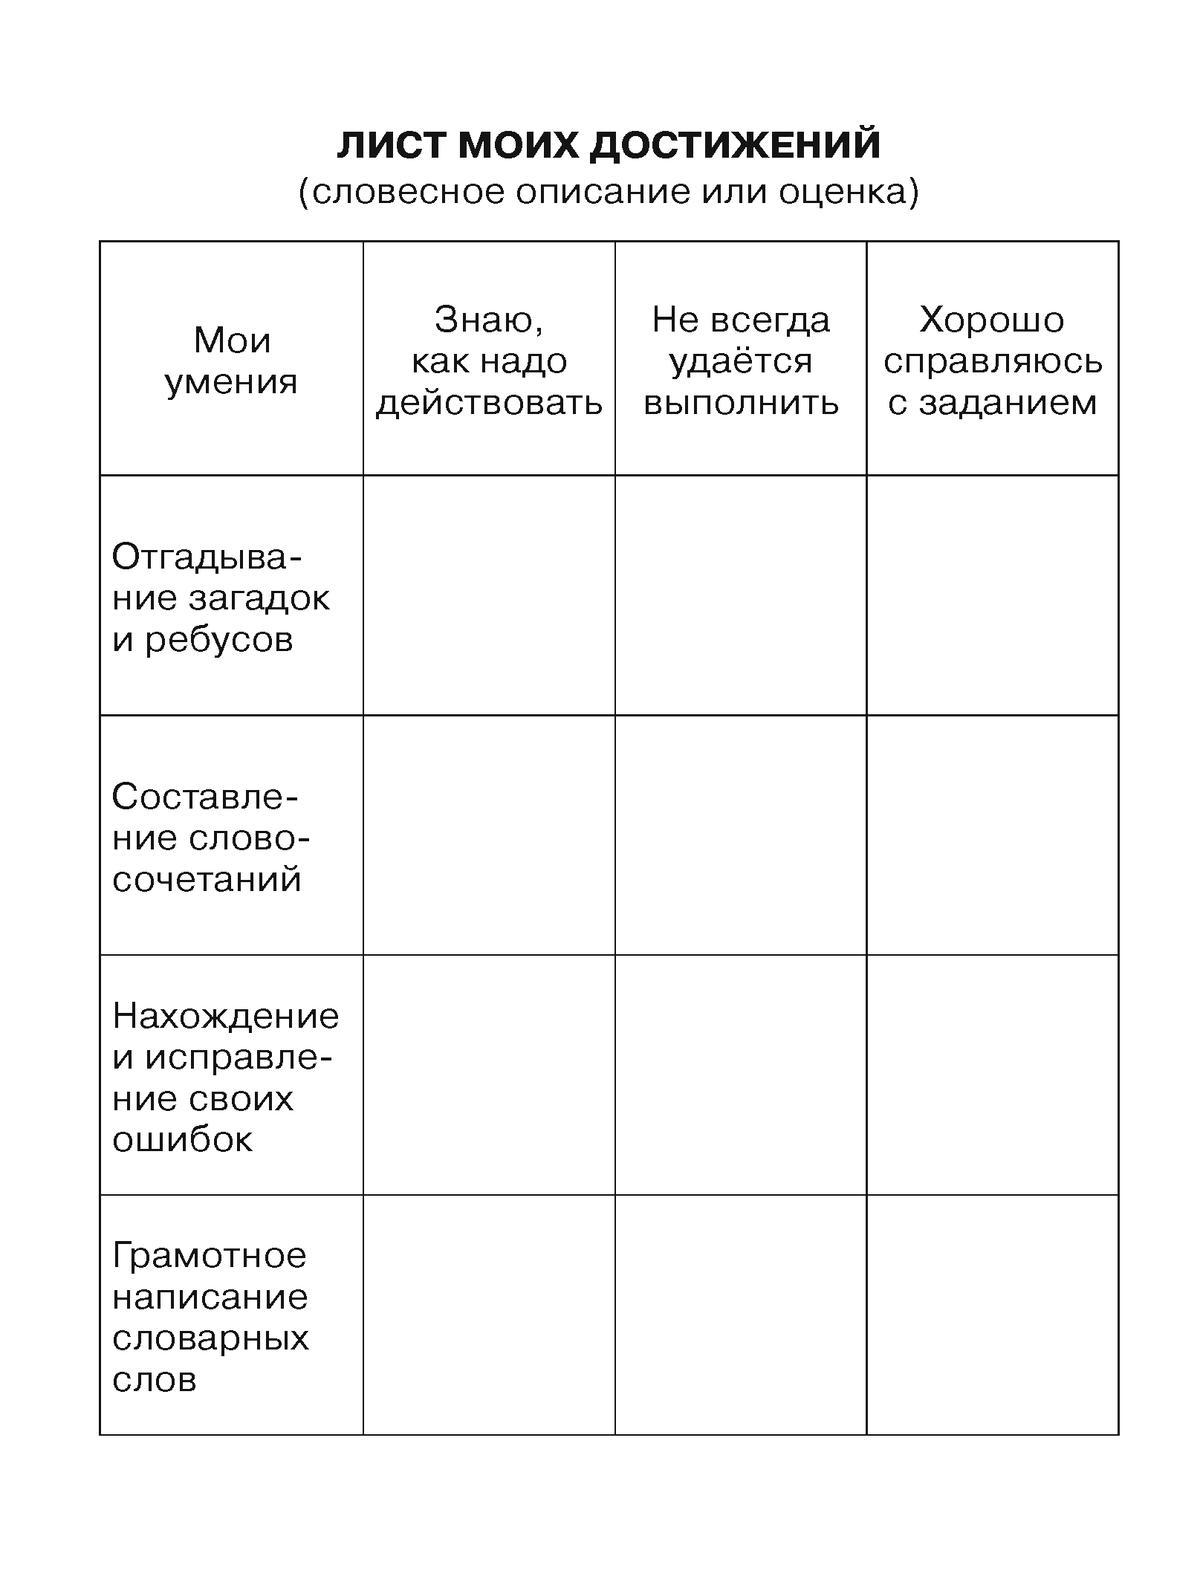 Тренажер по русскому языку для учащихся 1-2 классов. Учу словарные слова 5